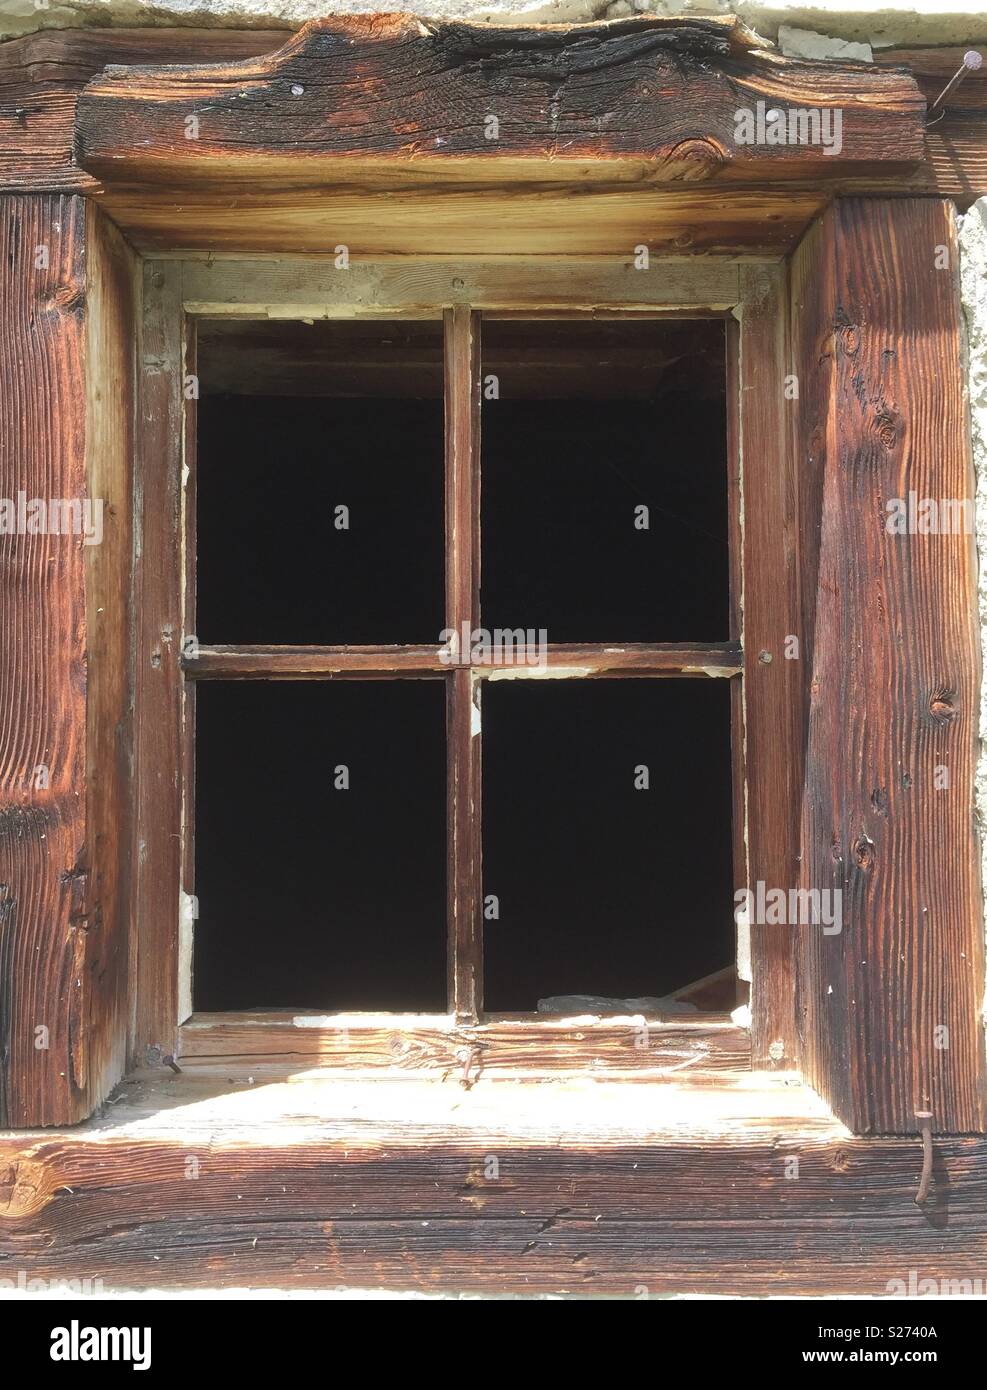 Alte Fenster Rahmen ohne Glas und Holz- Surround Stockfotografie - Alamy